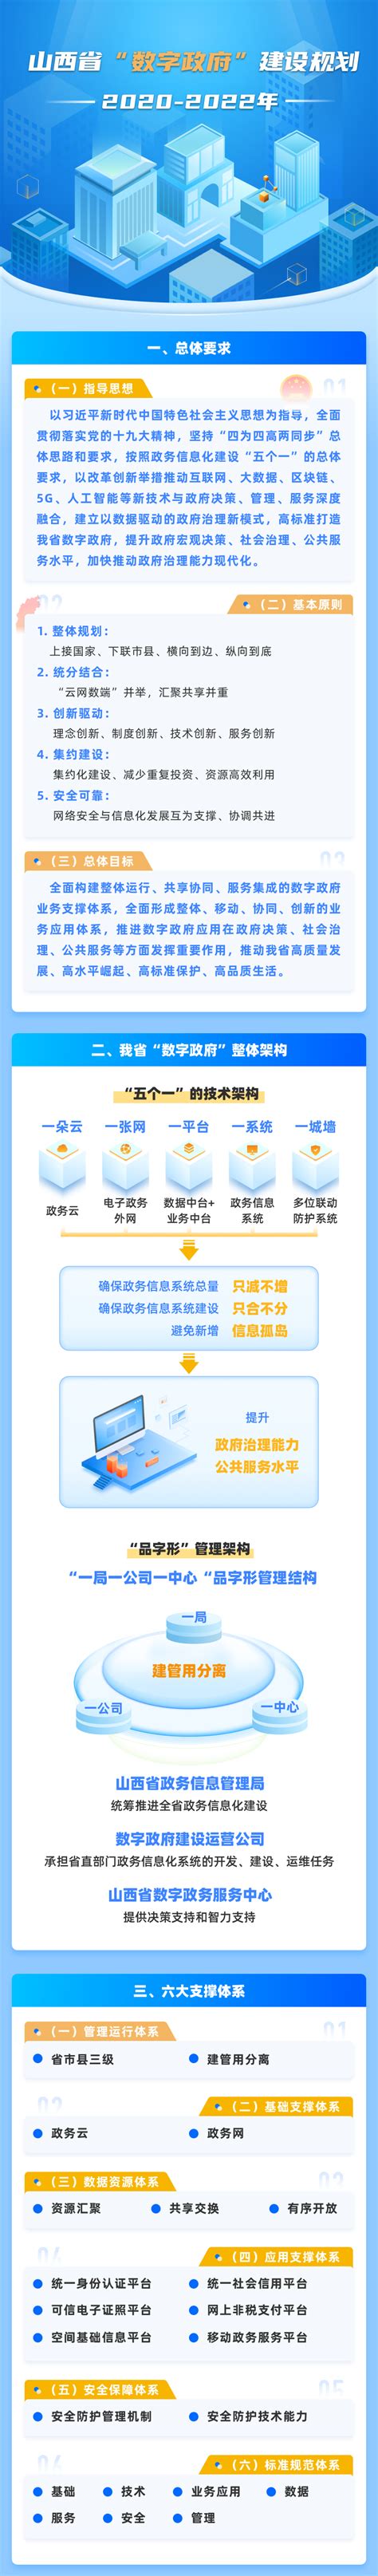 山西省“数字政府”建设规划（2020-2022）_亿信华辰-大数据分析、数据治理、商业智能BI工具与服务提供商